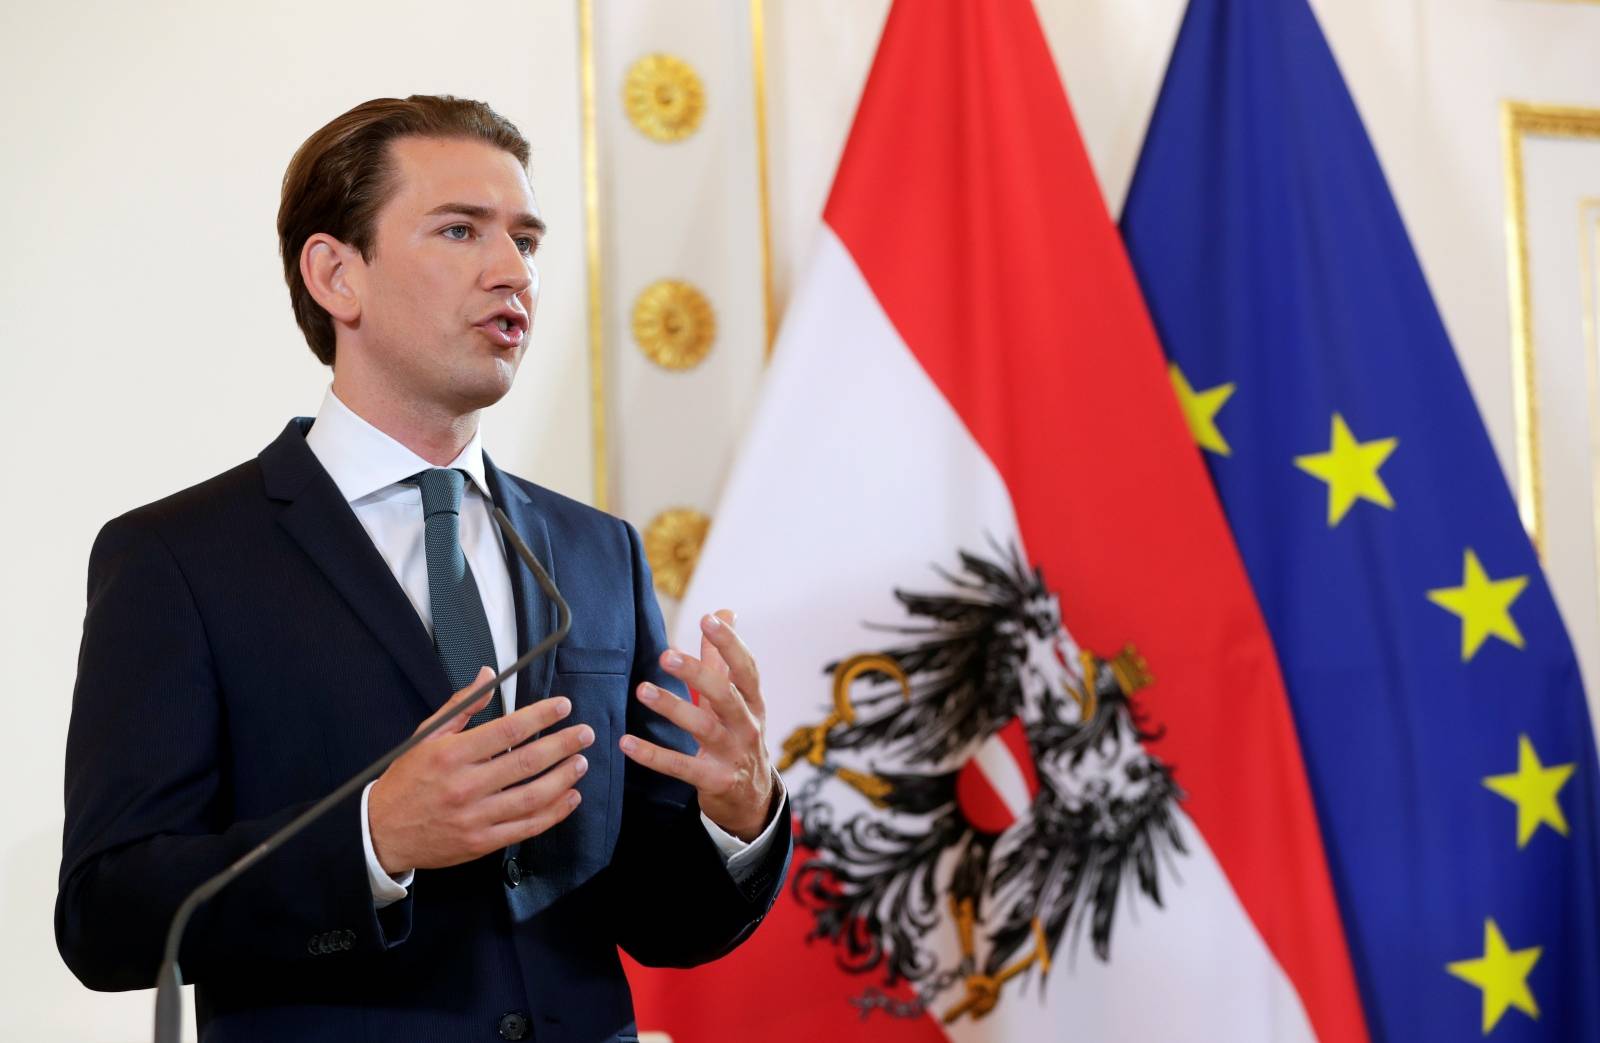 Austrian Chancellor Kurz delivers his speech in Vienna